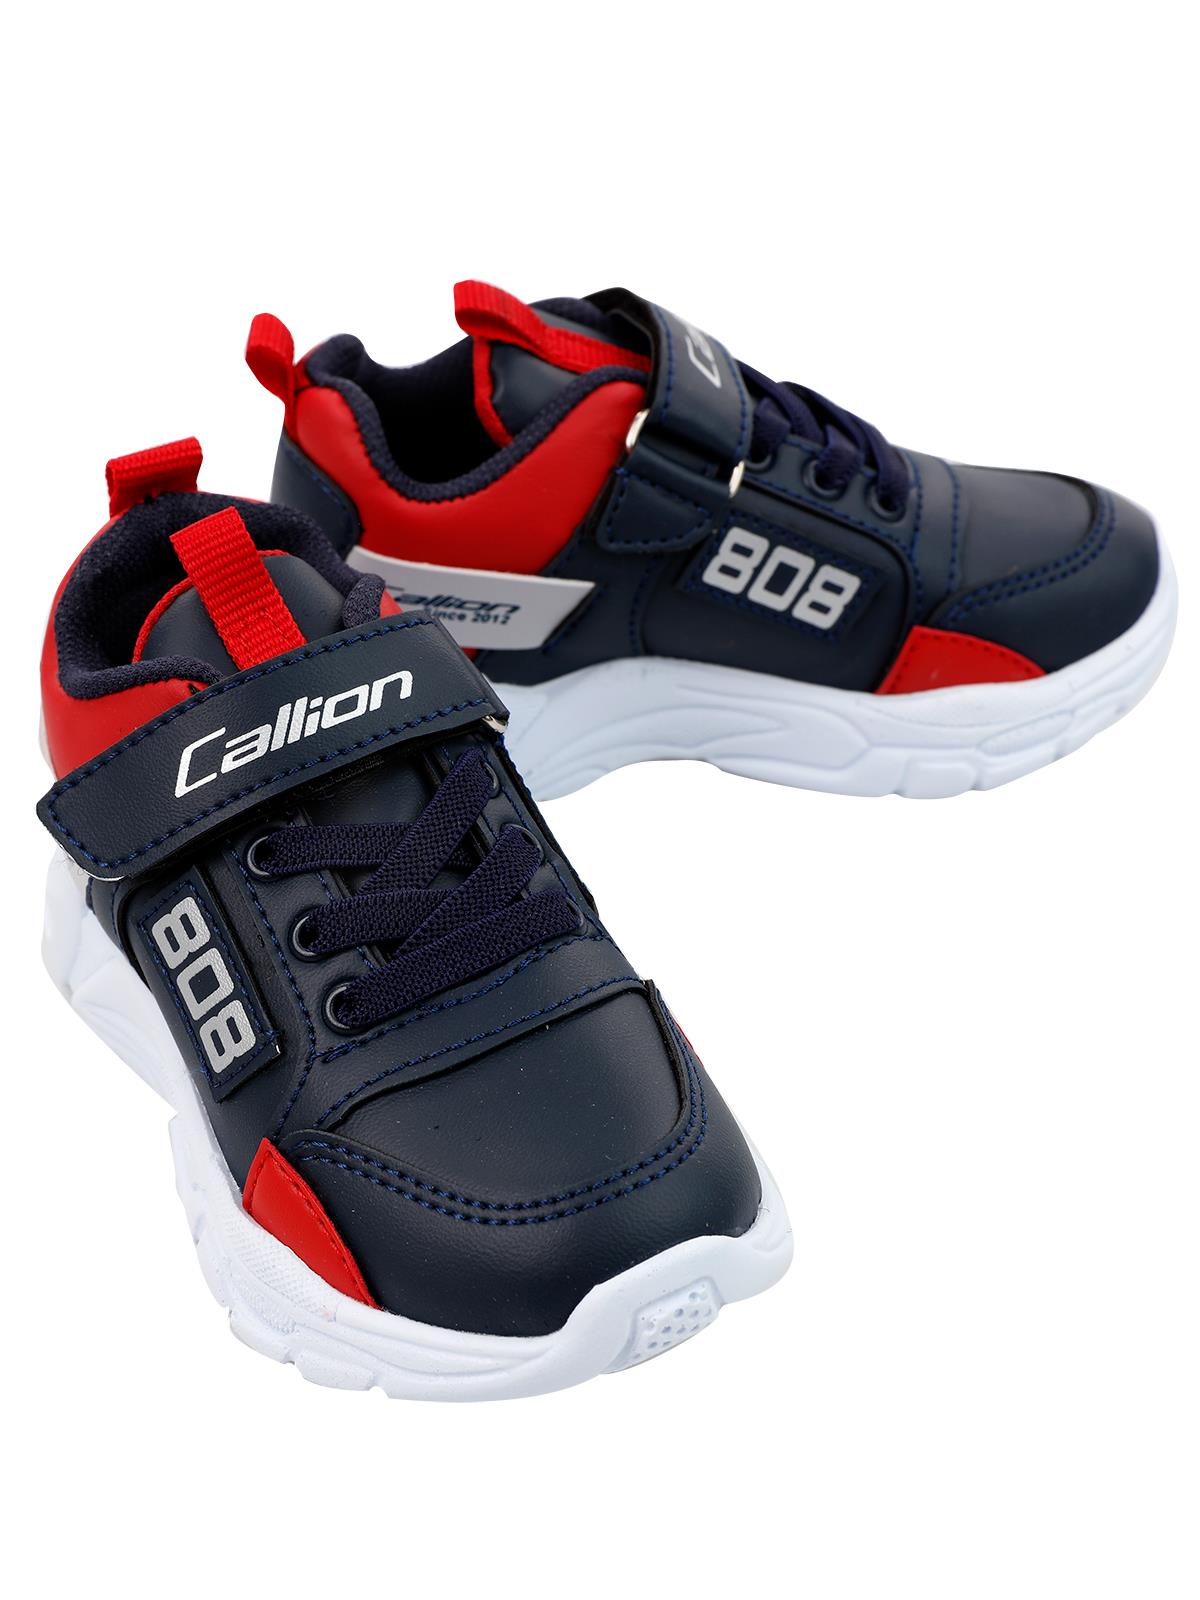 Callion Erkek Çocuk Spor Ayakkabı 26-30 Numara Lacivert-Kırmızı